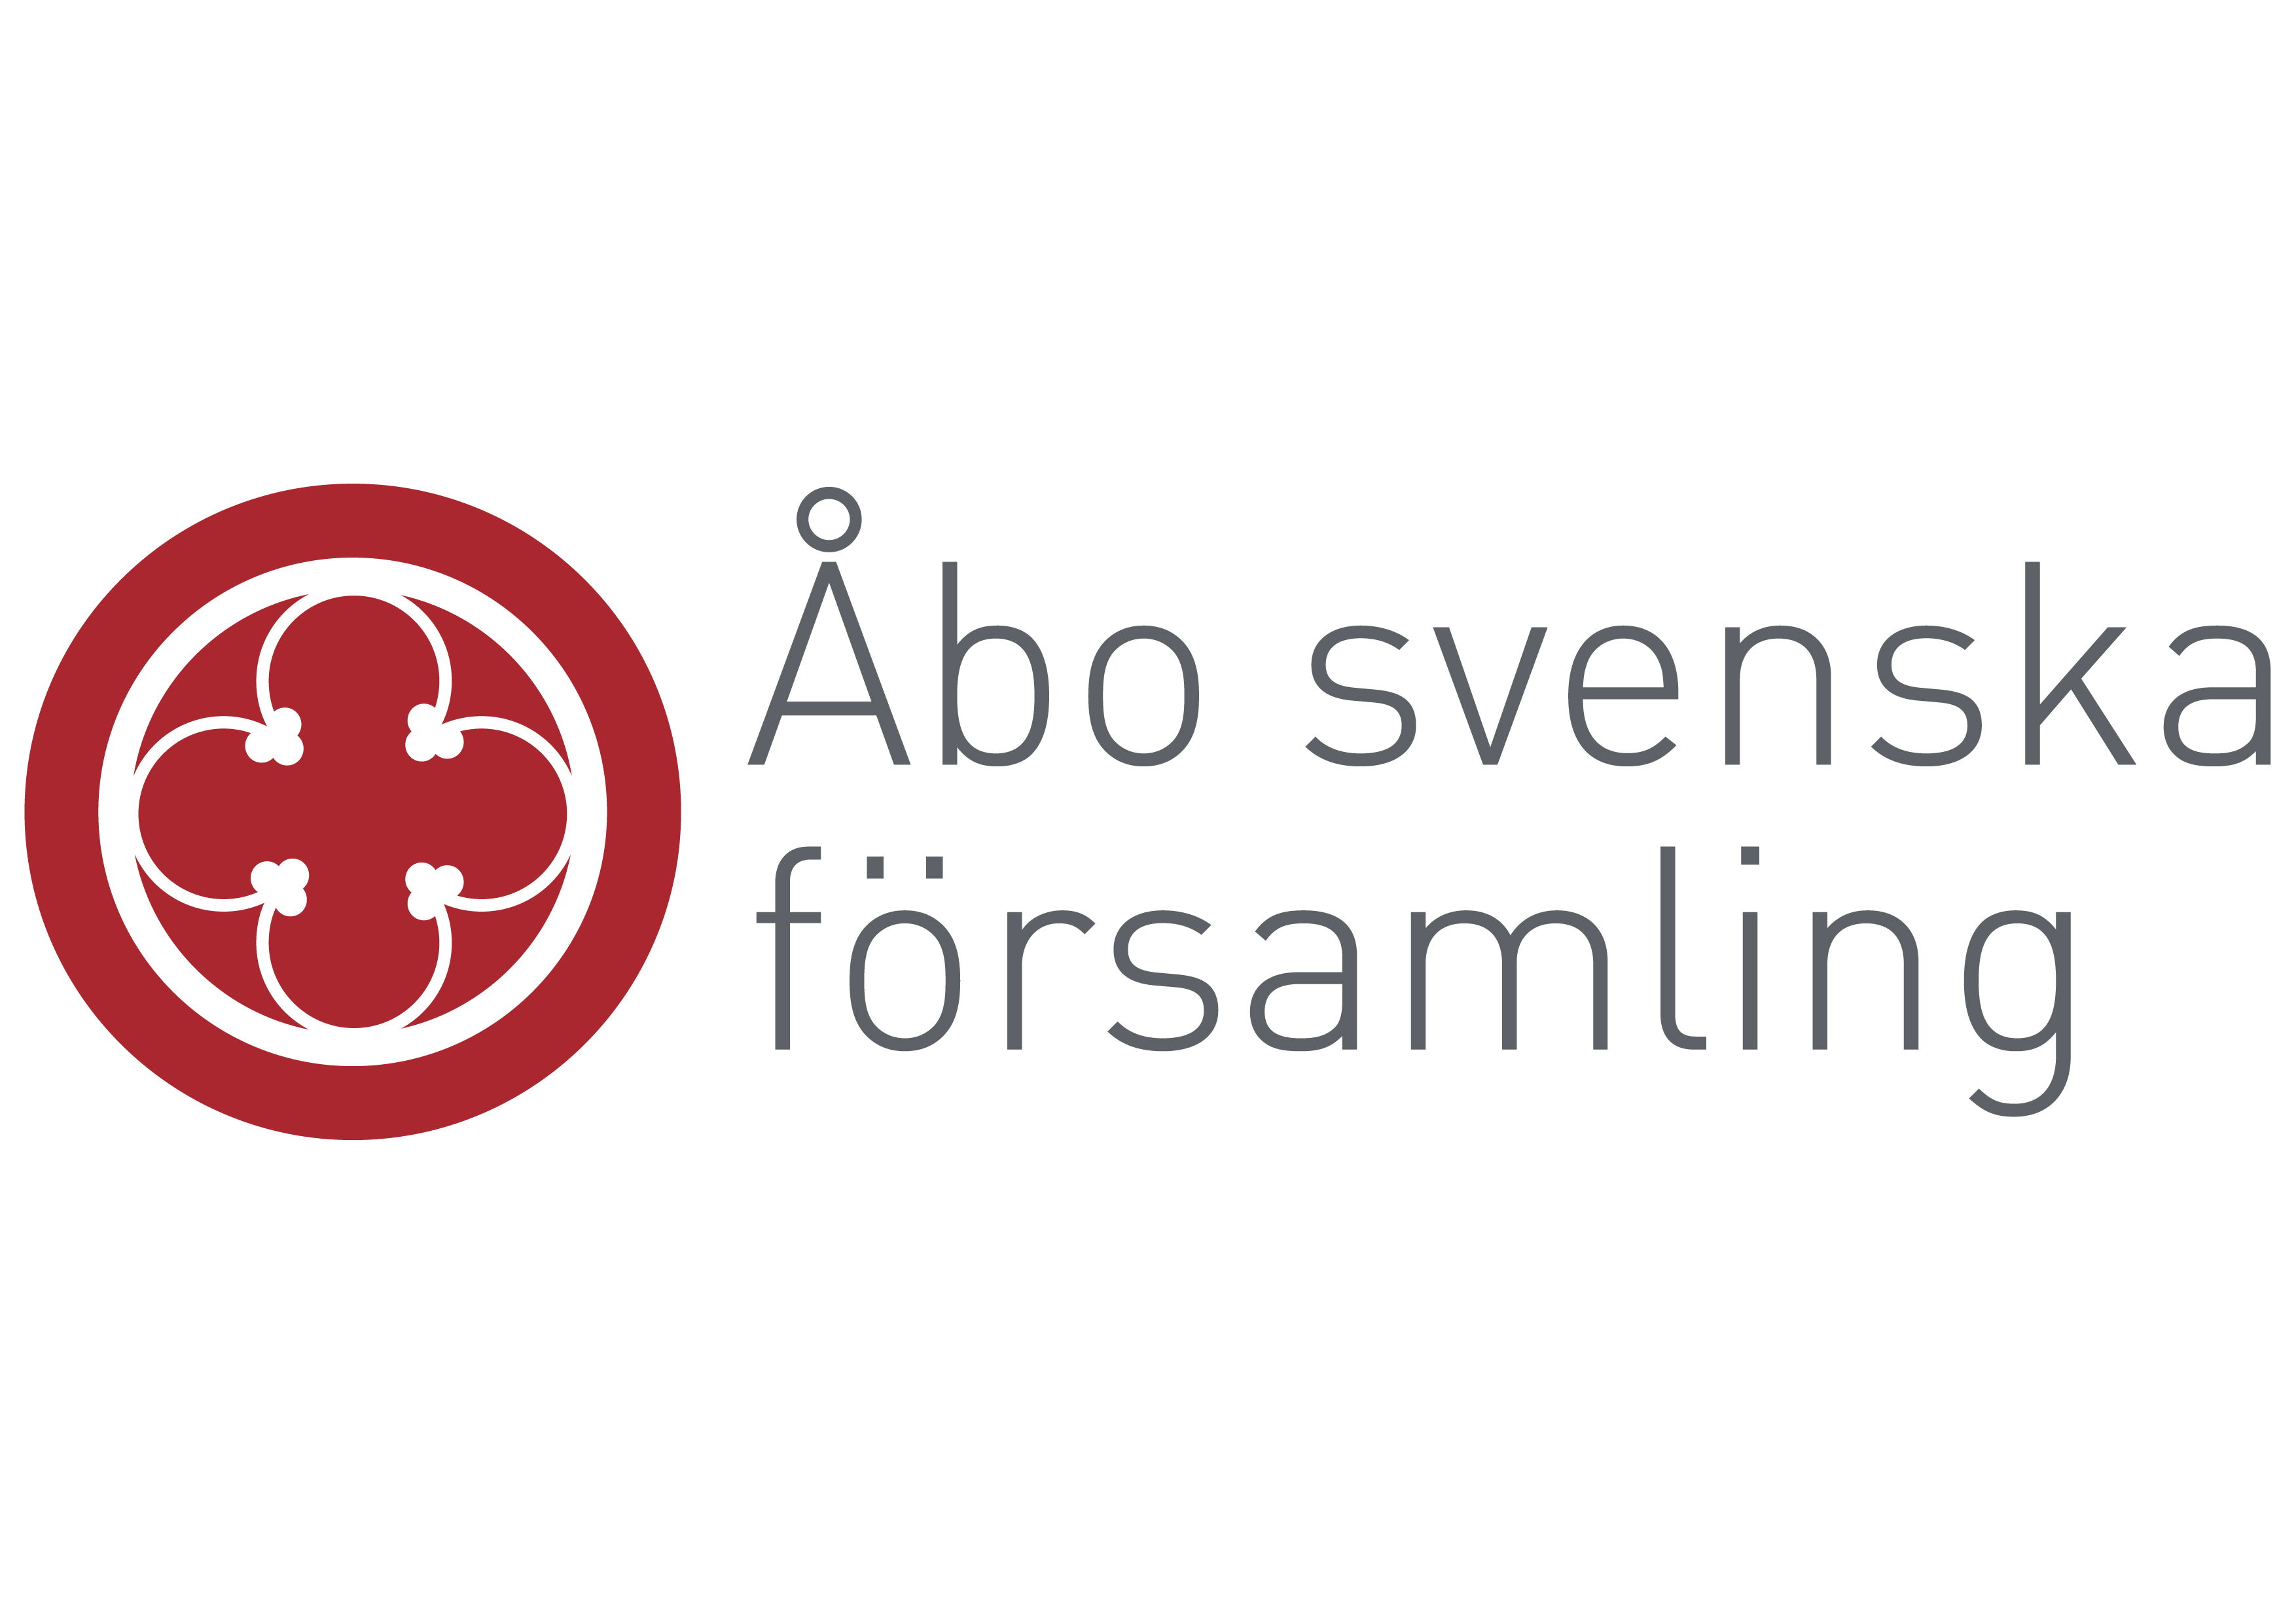 Åbo svenska församlings logo